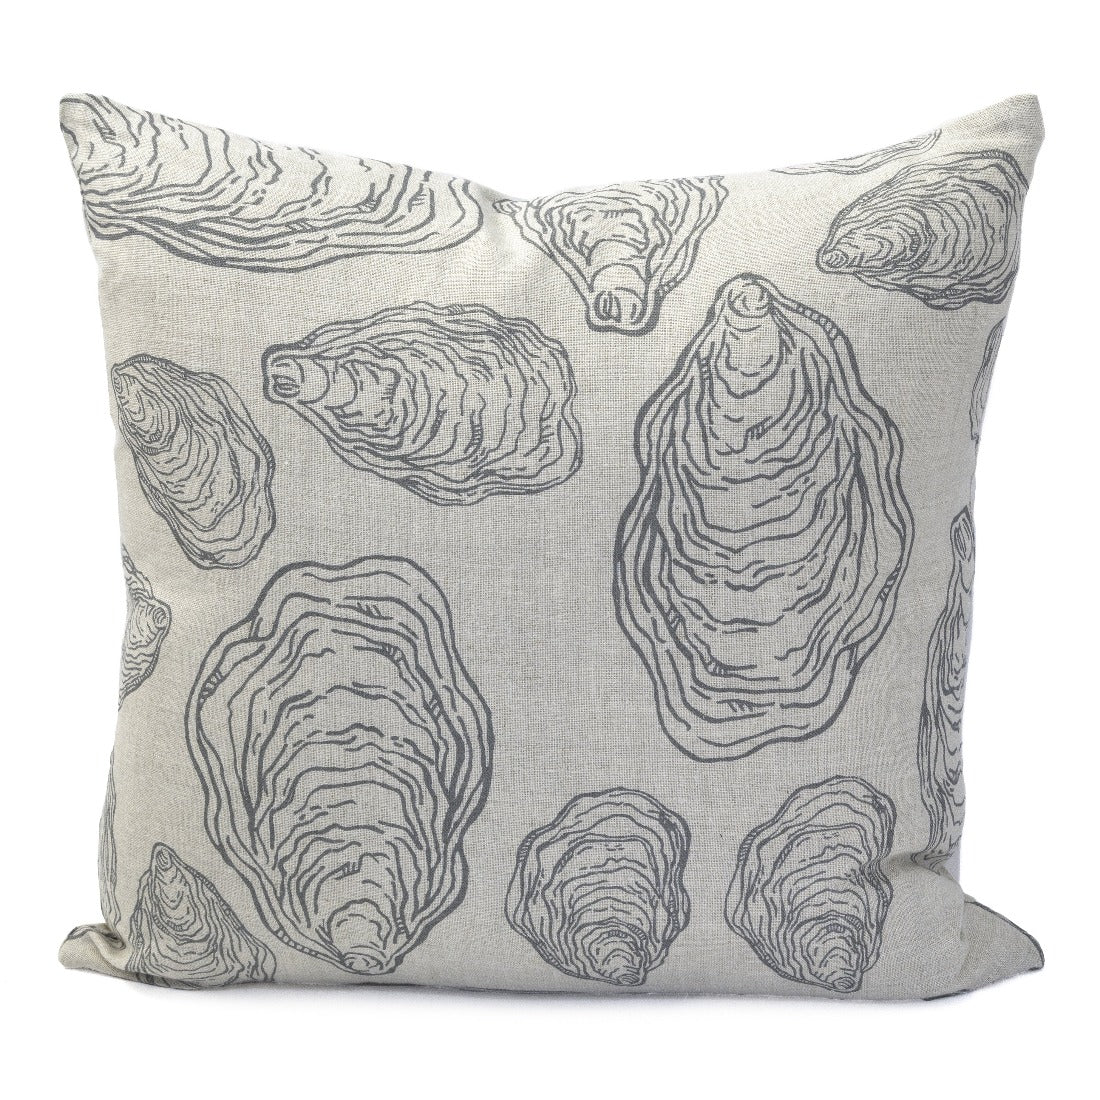 Oyster Shells Pillow, Natural Linen